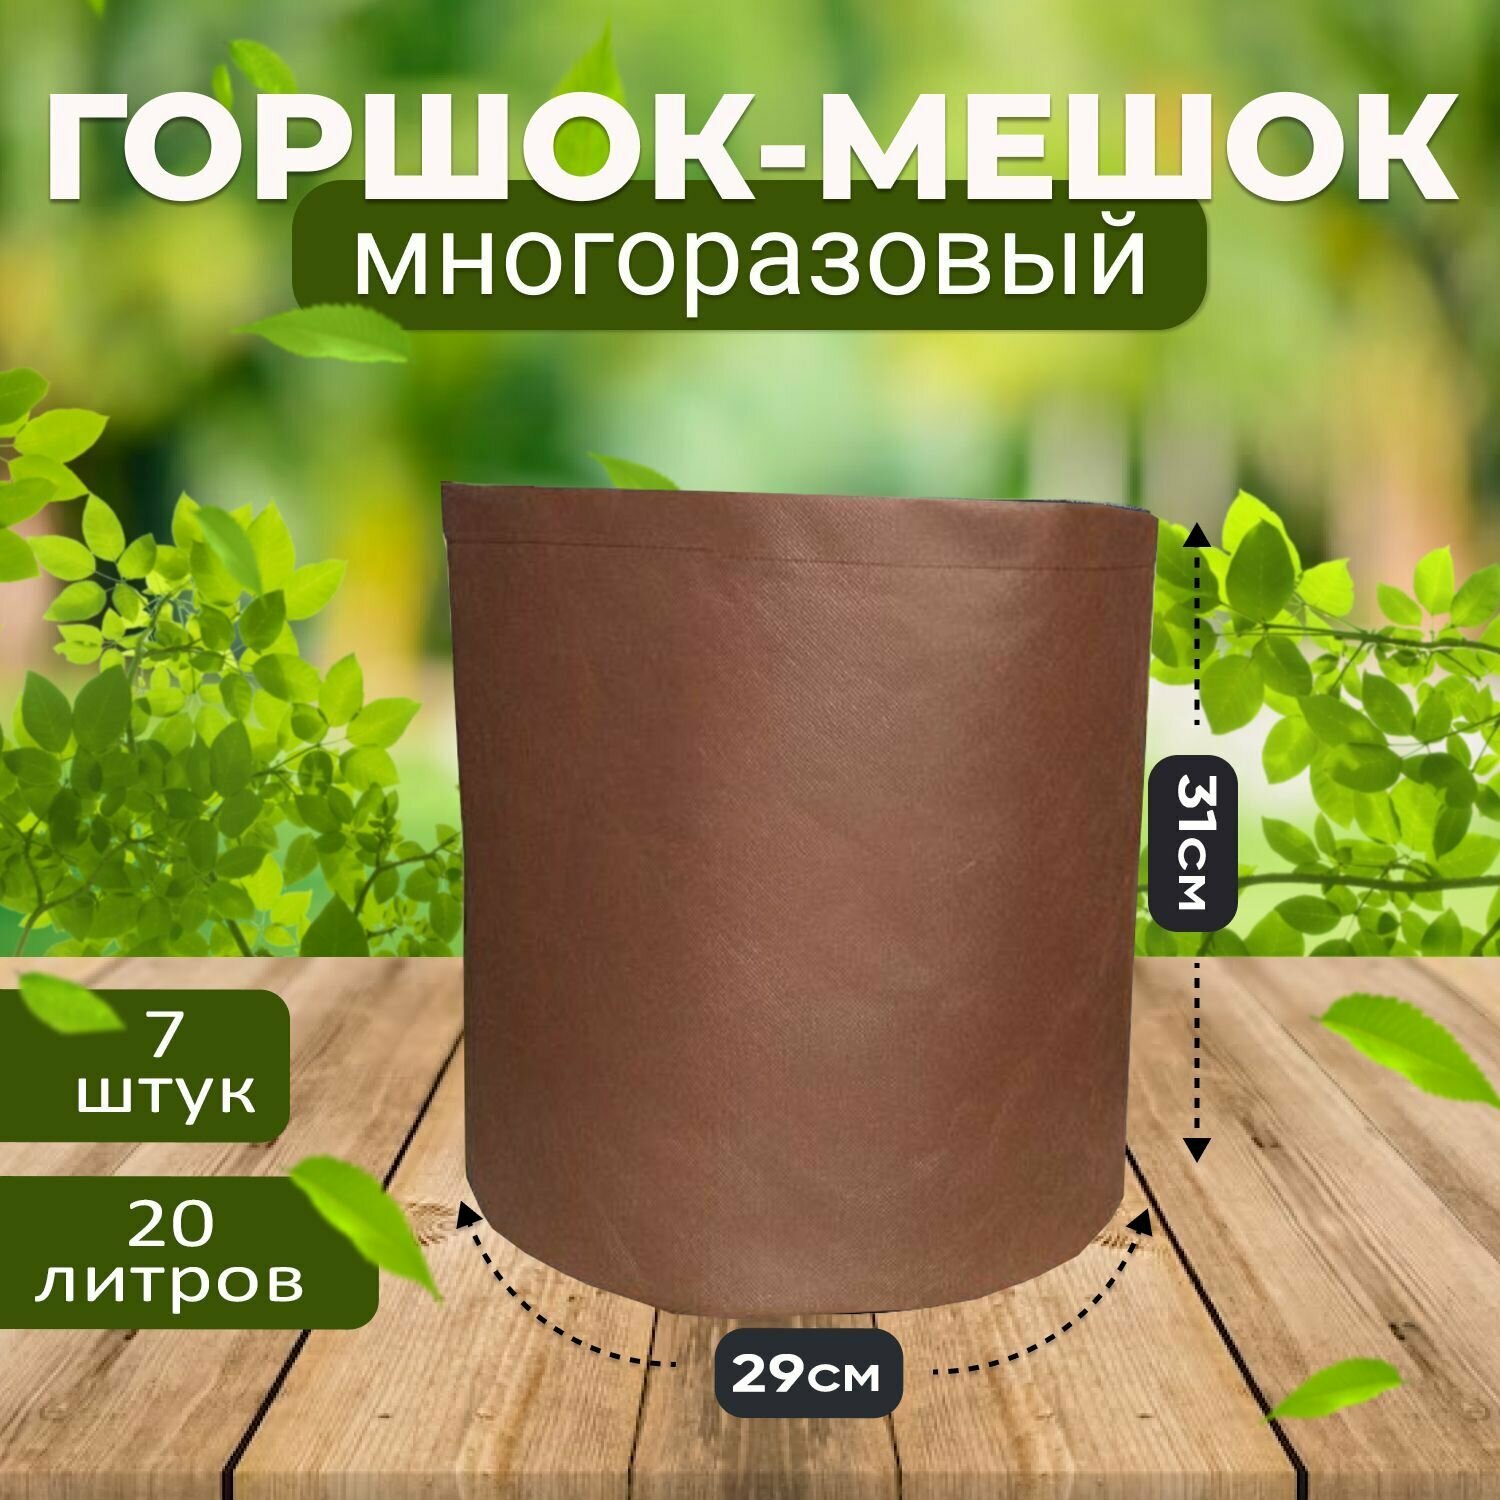 Тканевый текстильный горшок мешок вазон для растений и цветов коричневый 20л, 7шт. (Гроубэг, Grow Bag)